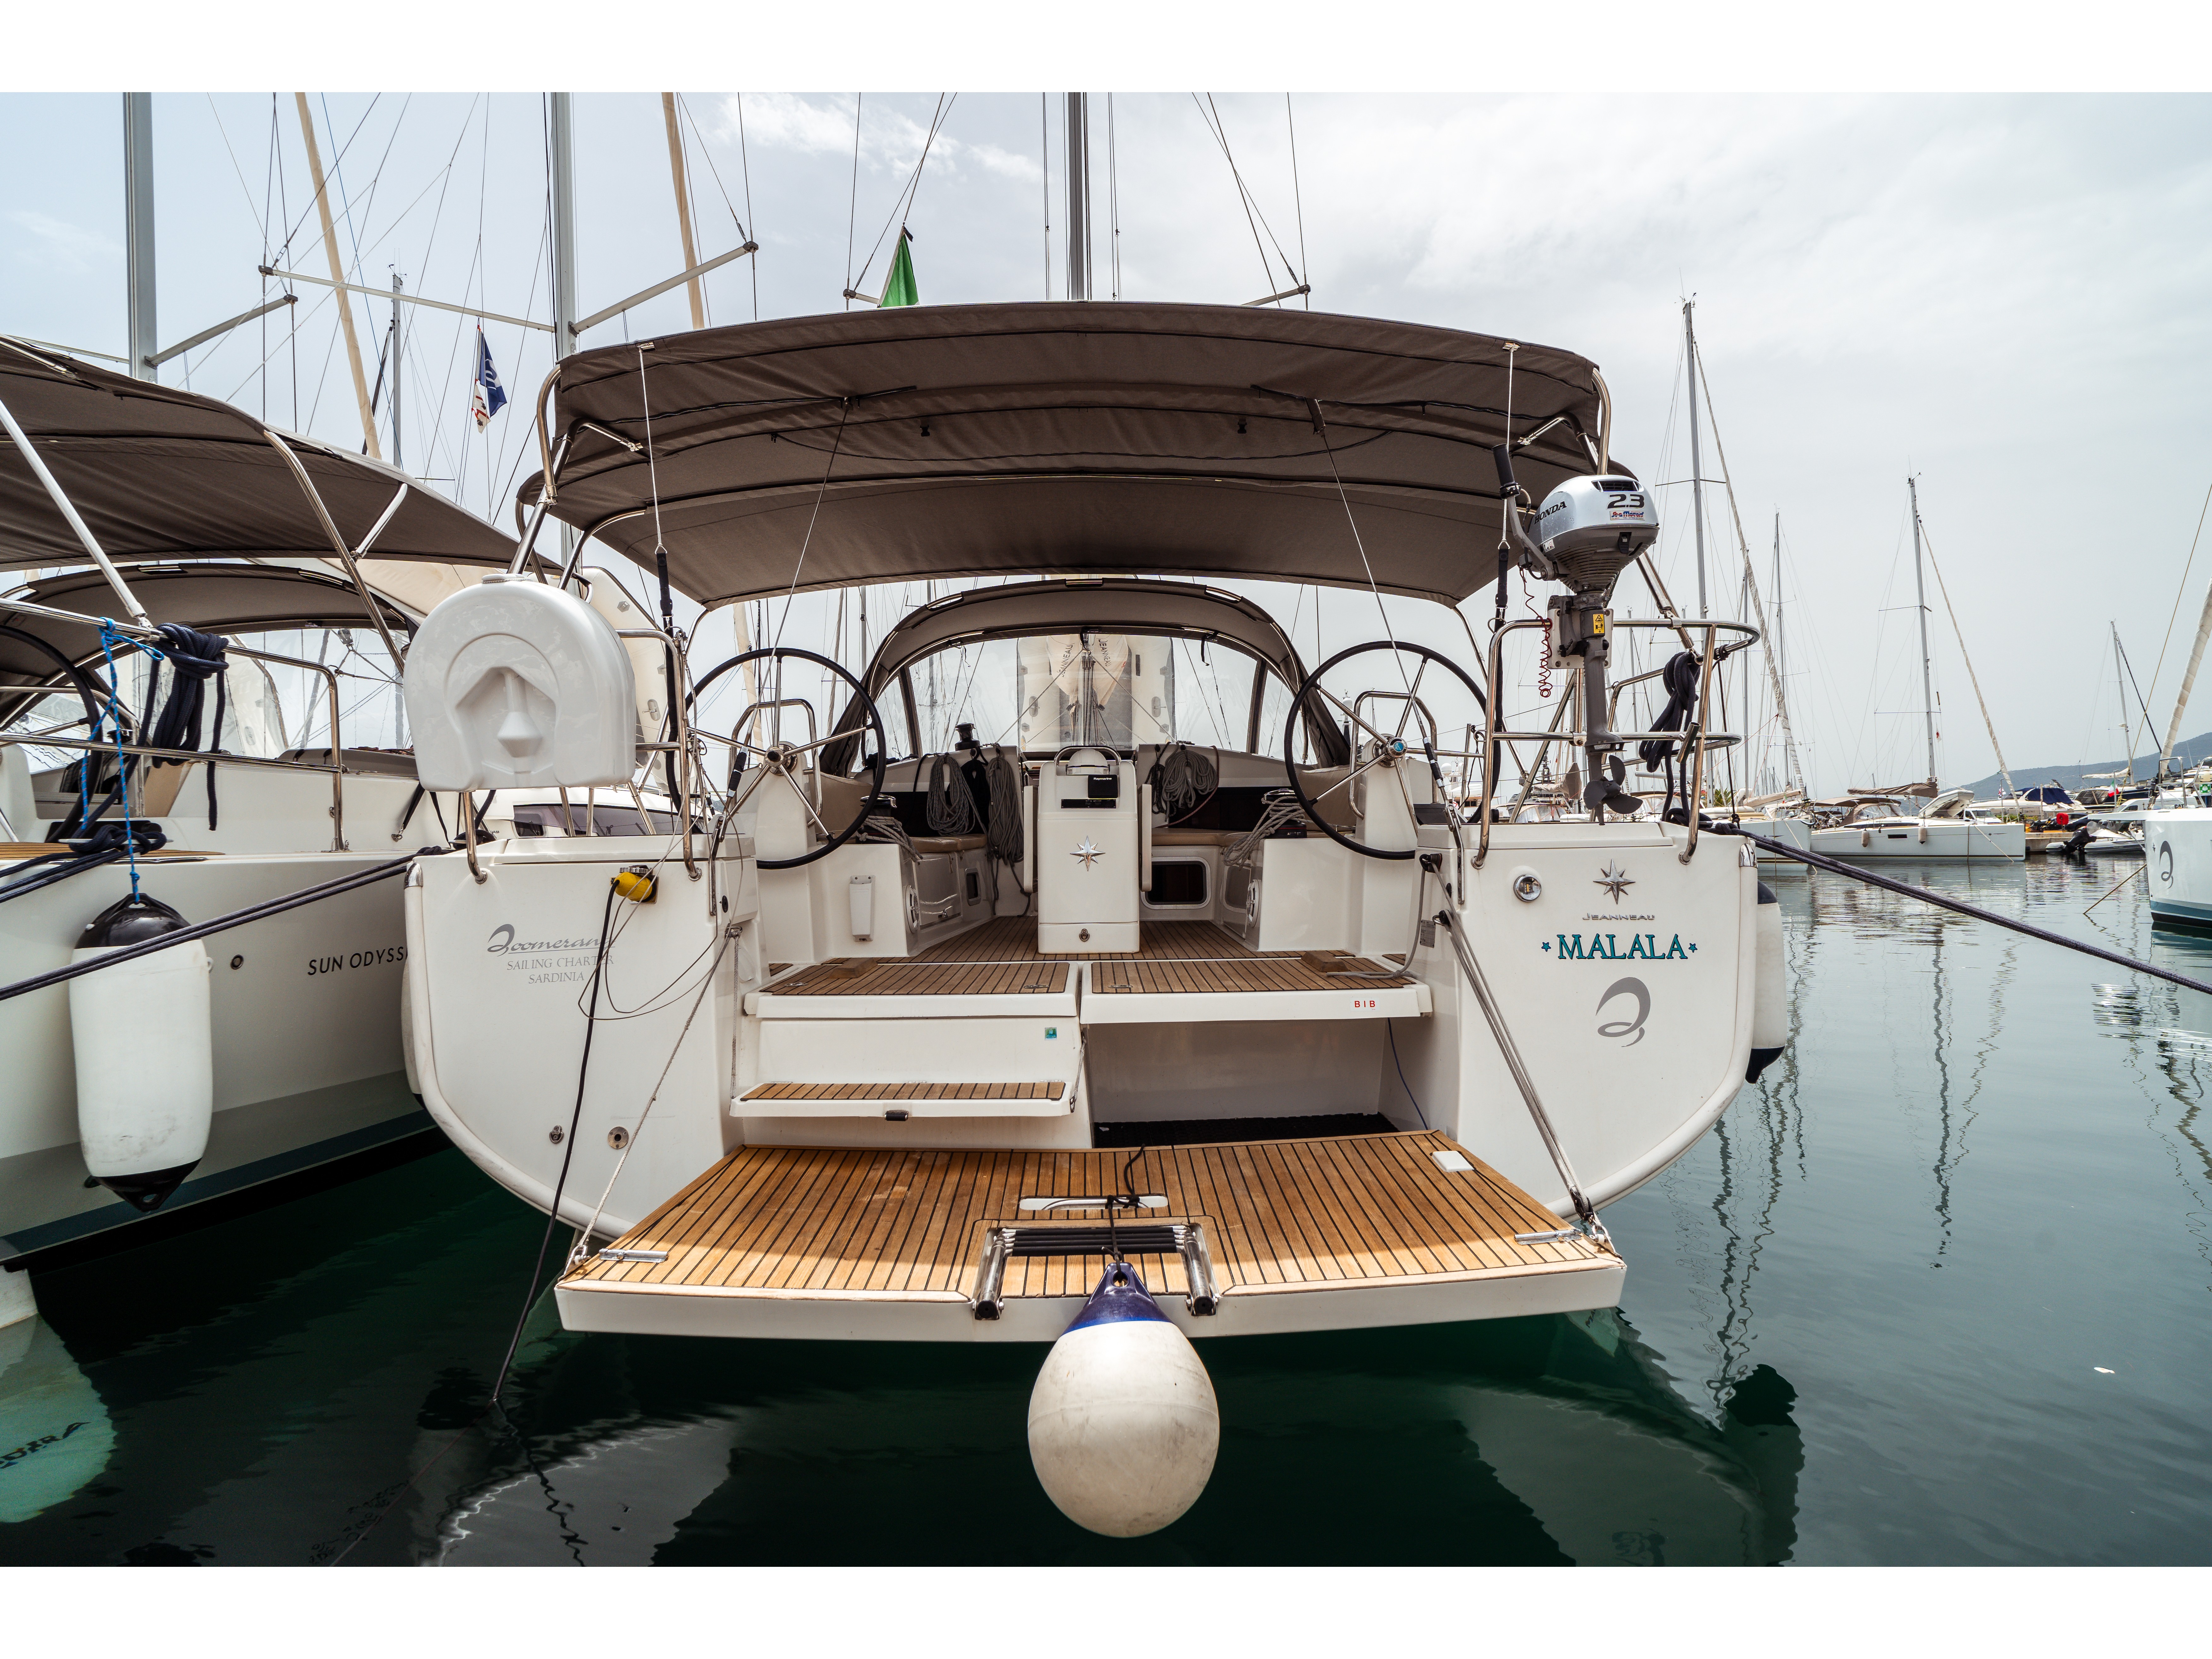 Sun Odyssey 440 - Yacht Charter Portisco & Boat hire in Italy Sardinia Costa Smeralda Portisco Marina di Portisco 3